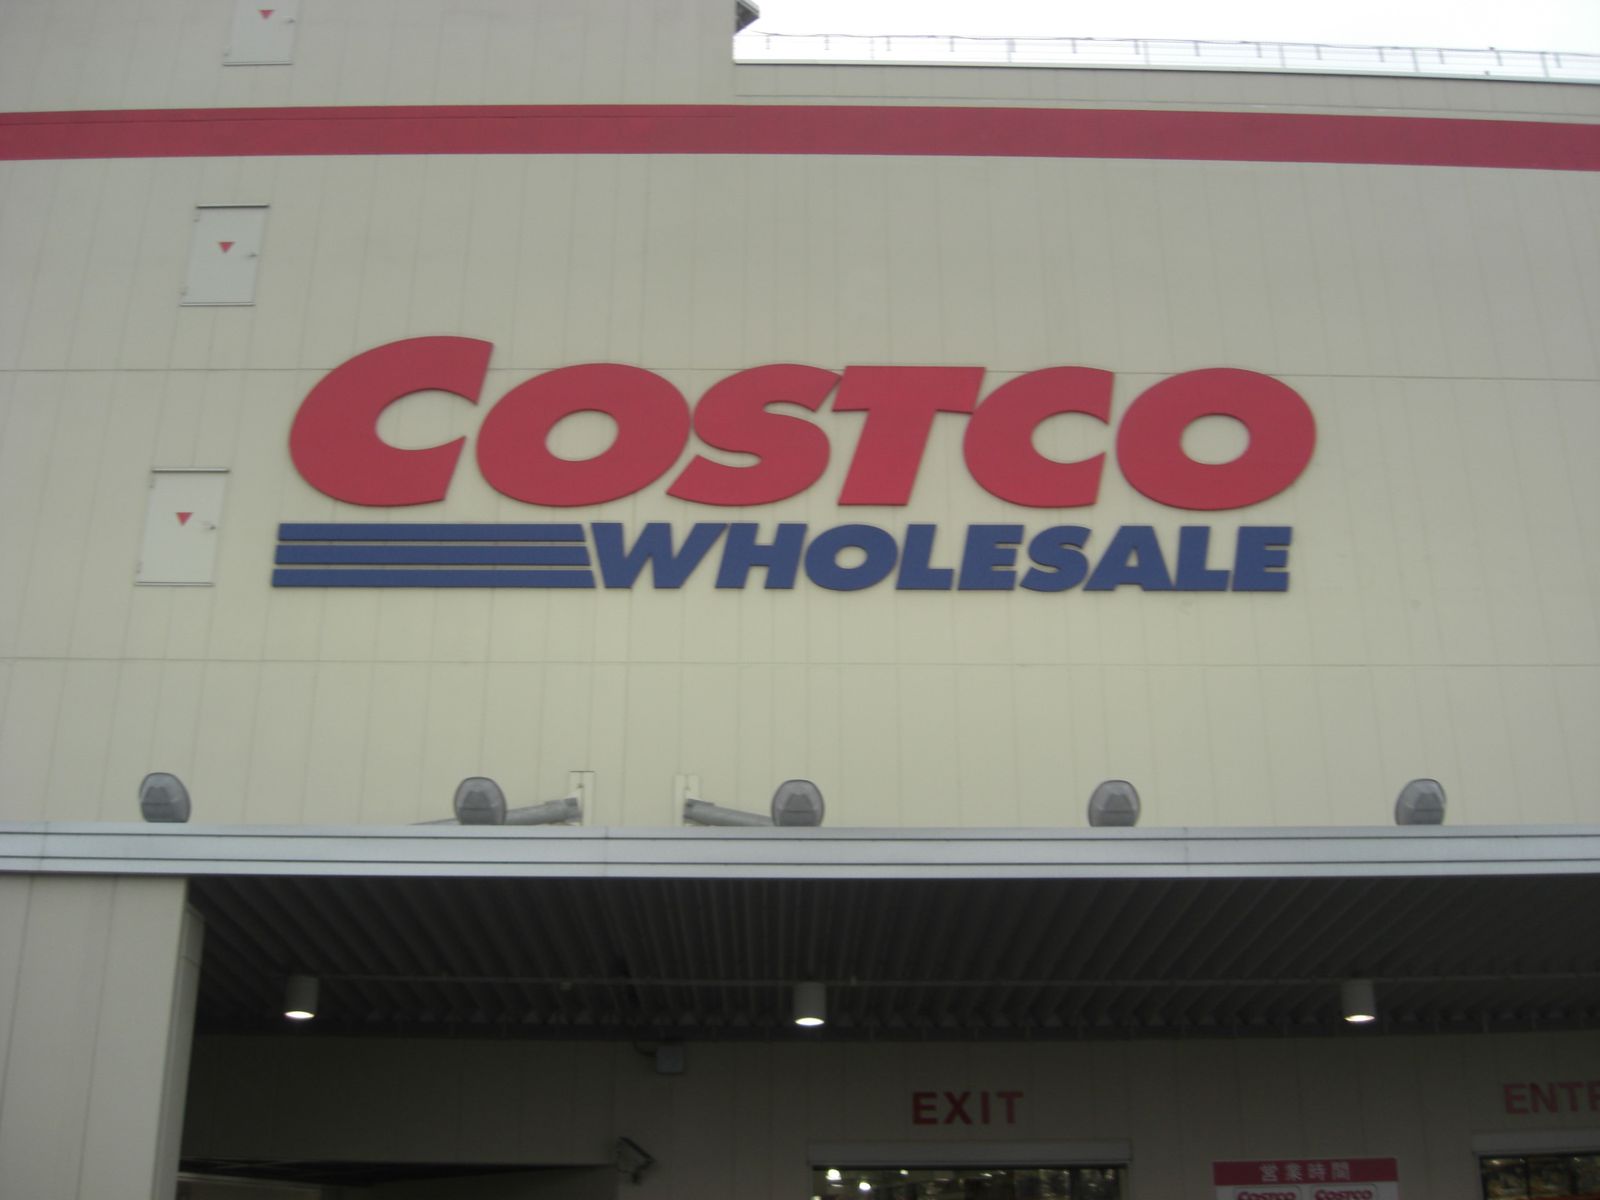 Costco, le concept américain qui plaît aux japonais (7) -  Retail-distribution by Frank Rosenthal